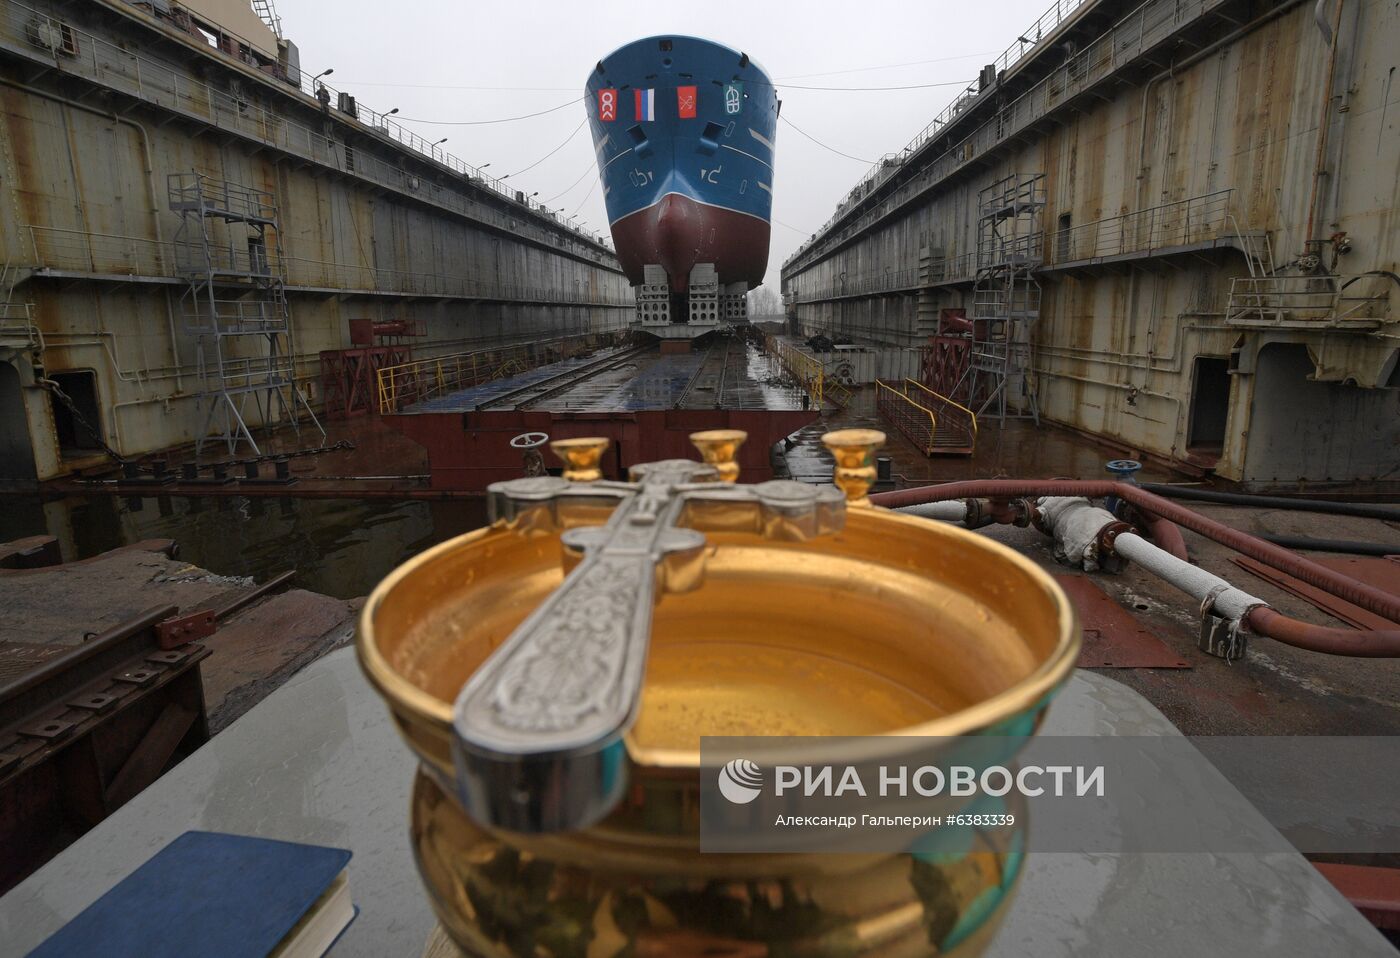 Спуск на воду ярусолова "Марлин" в Санкт-Петербурге